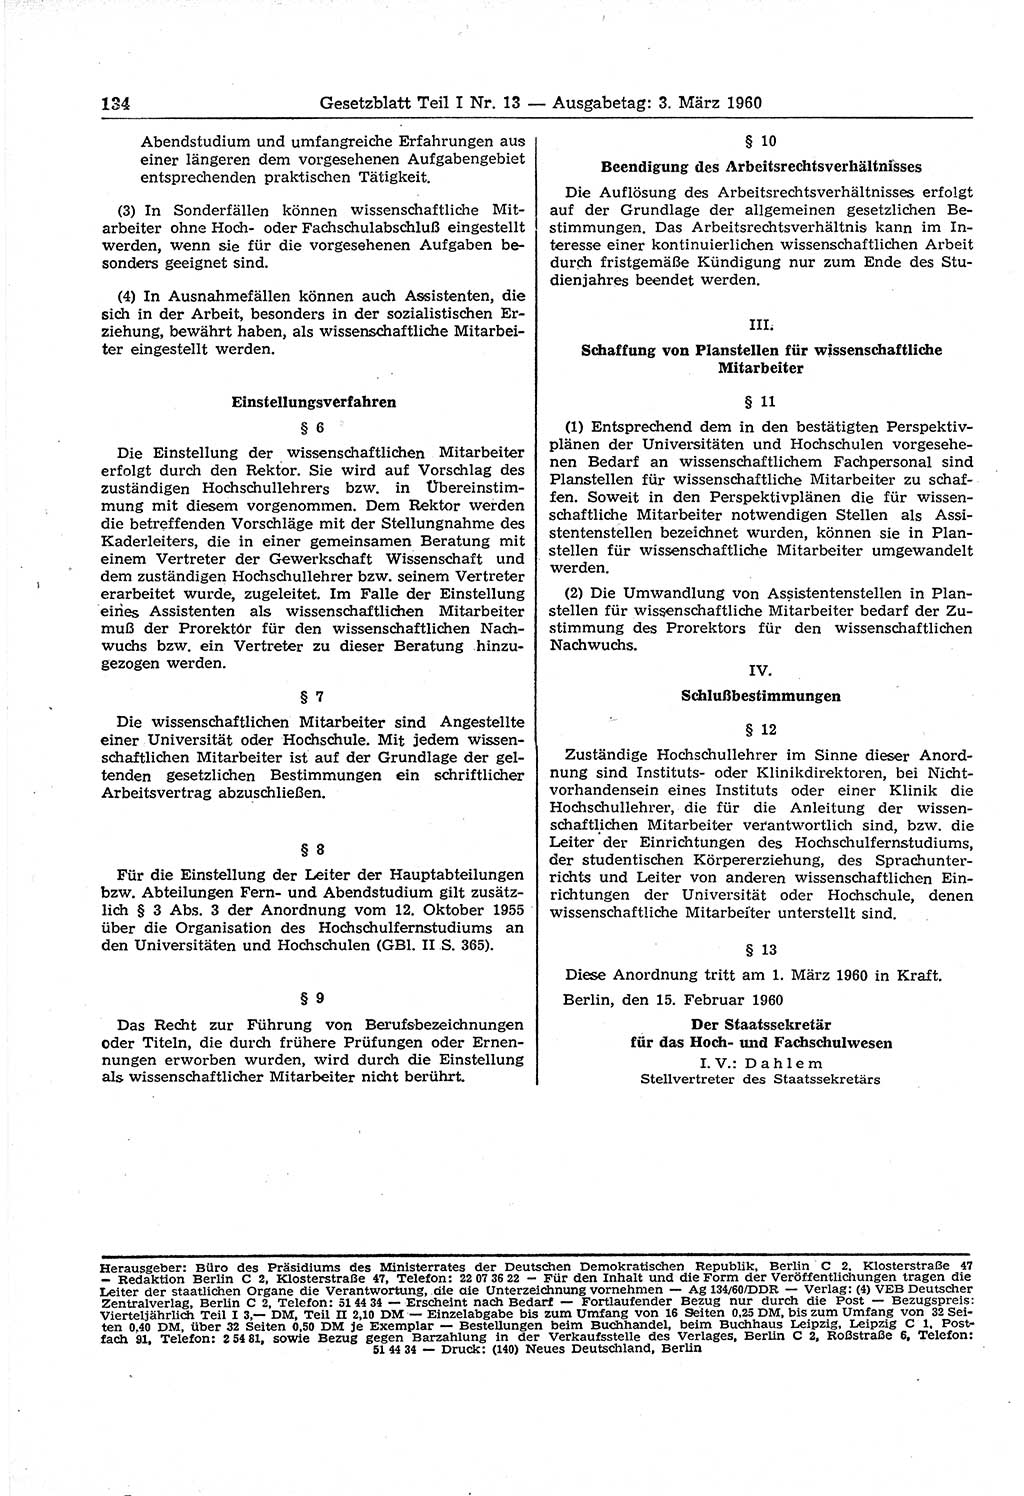 Gesetzblatt (GBl.) der Deutschen Demokratischen Republik (DDR) Teil Ⅰ 1960, Seite 134 (GBl. DDR Ⅰ 1960, S. 134)